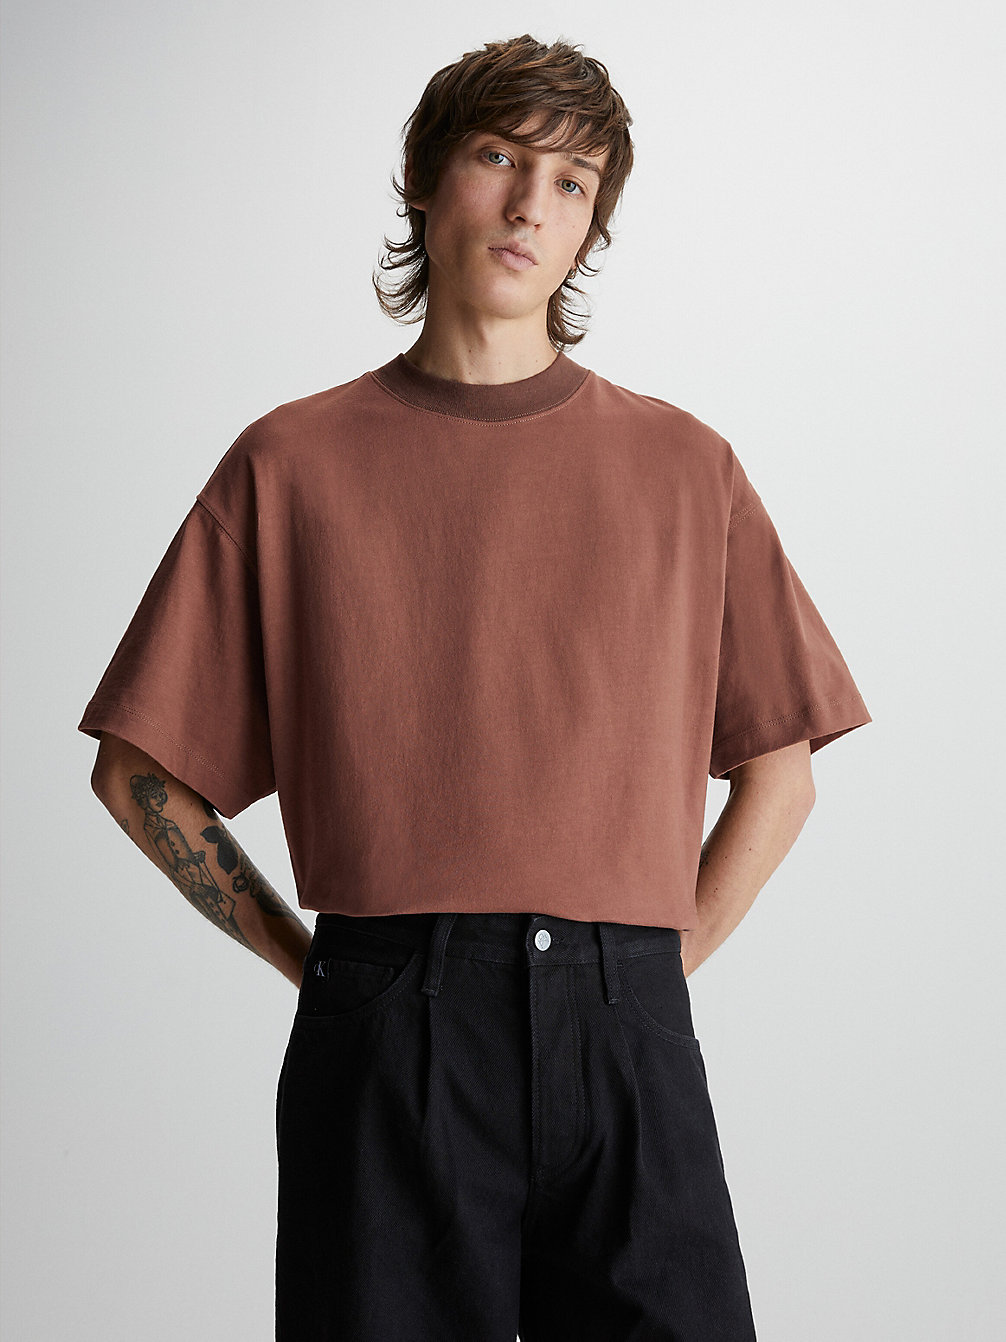 PECAN NUT > Габаритная футболка унисекс > undefined unisex - Calvin Klein